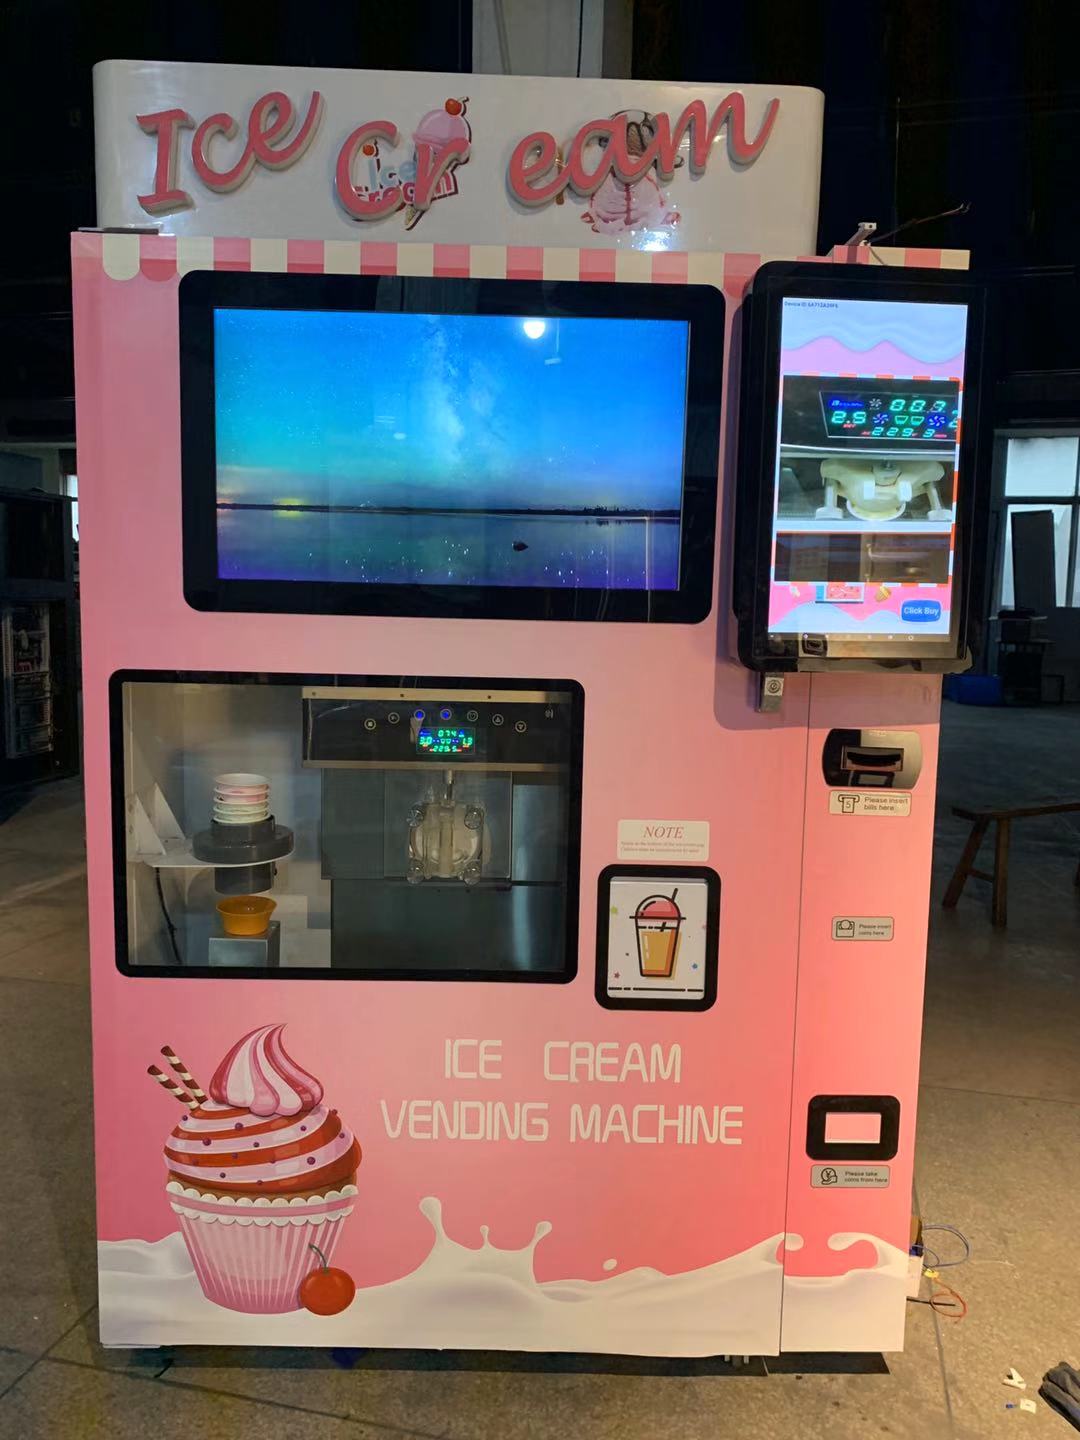 The difference between soft ice cream machine and hard ice cream machine